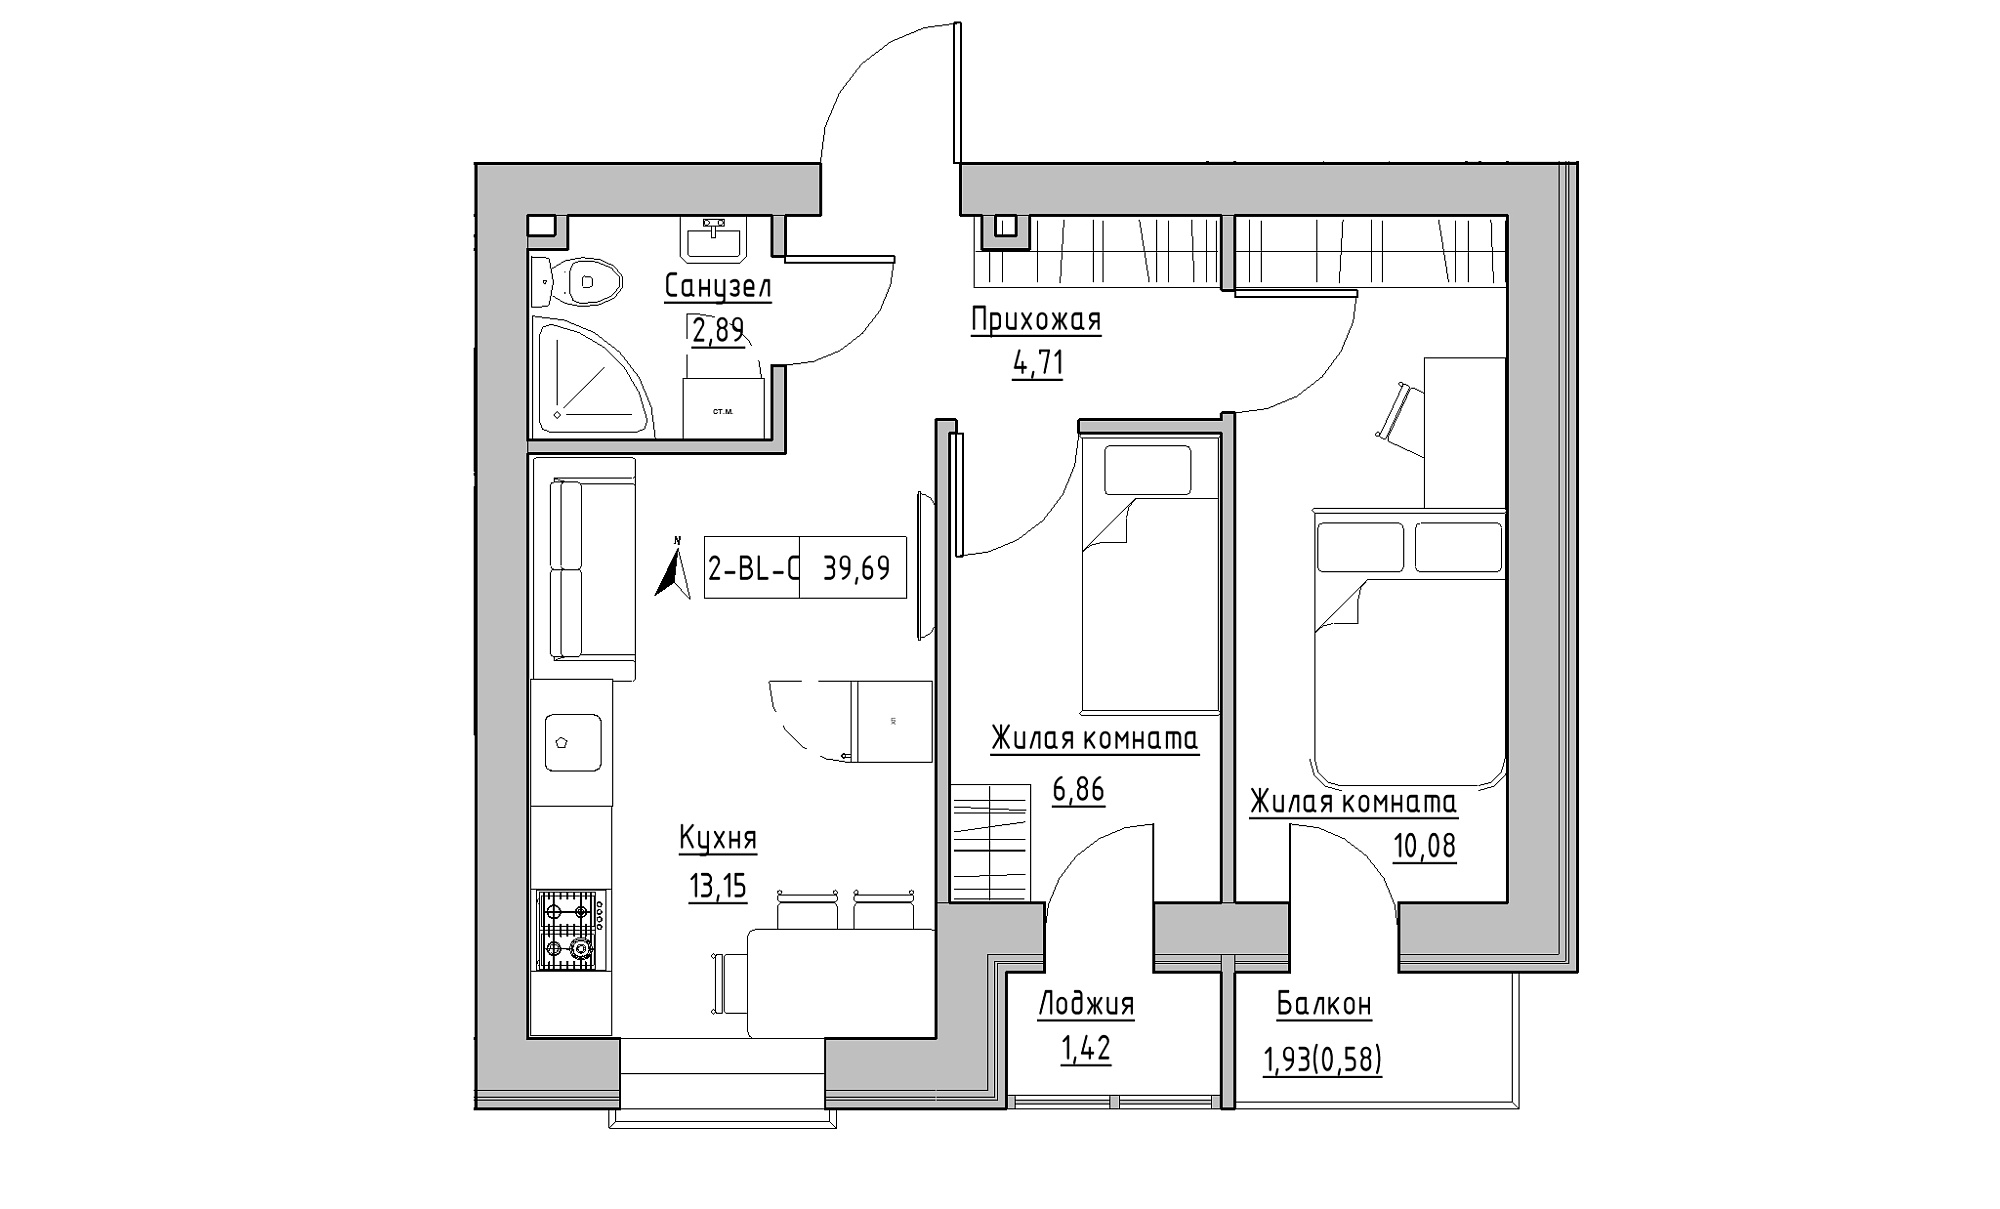 Планування 2-к квартира площею 39.69м2, KS-016-02/0005.